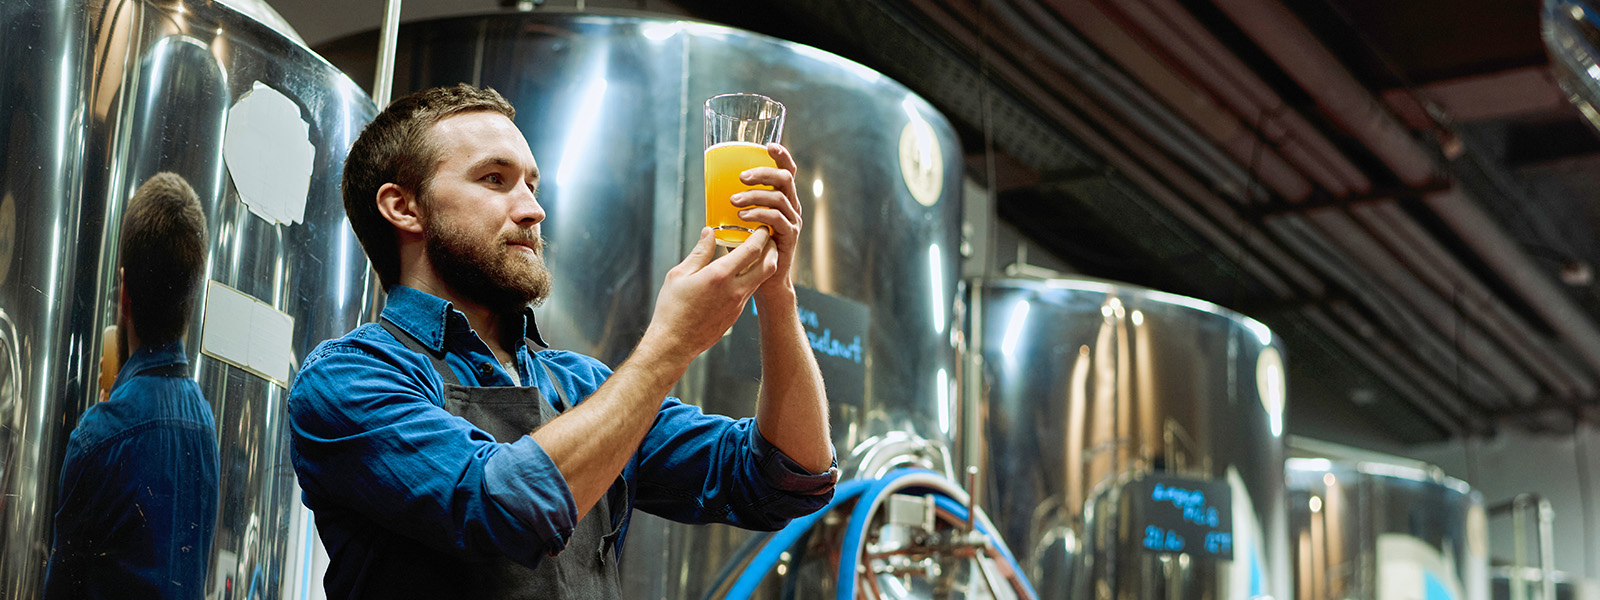 Brewmaster evaluates beer in brewery